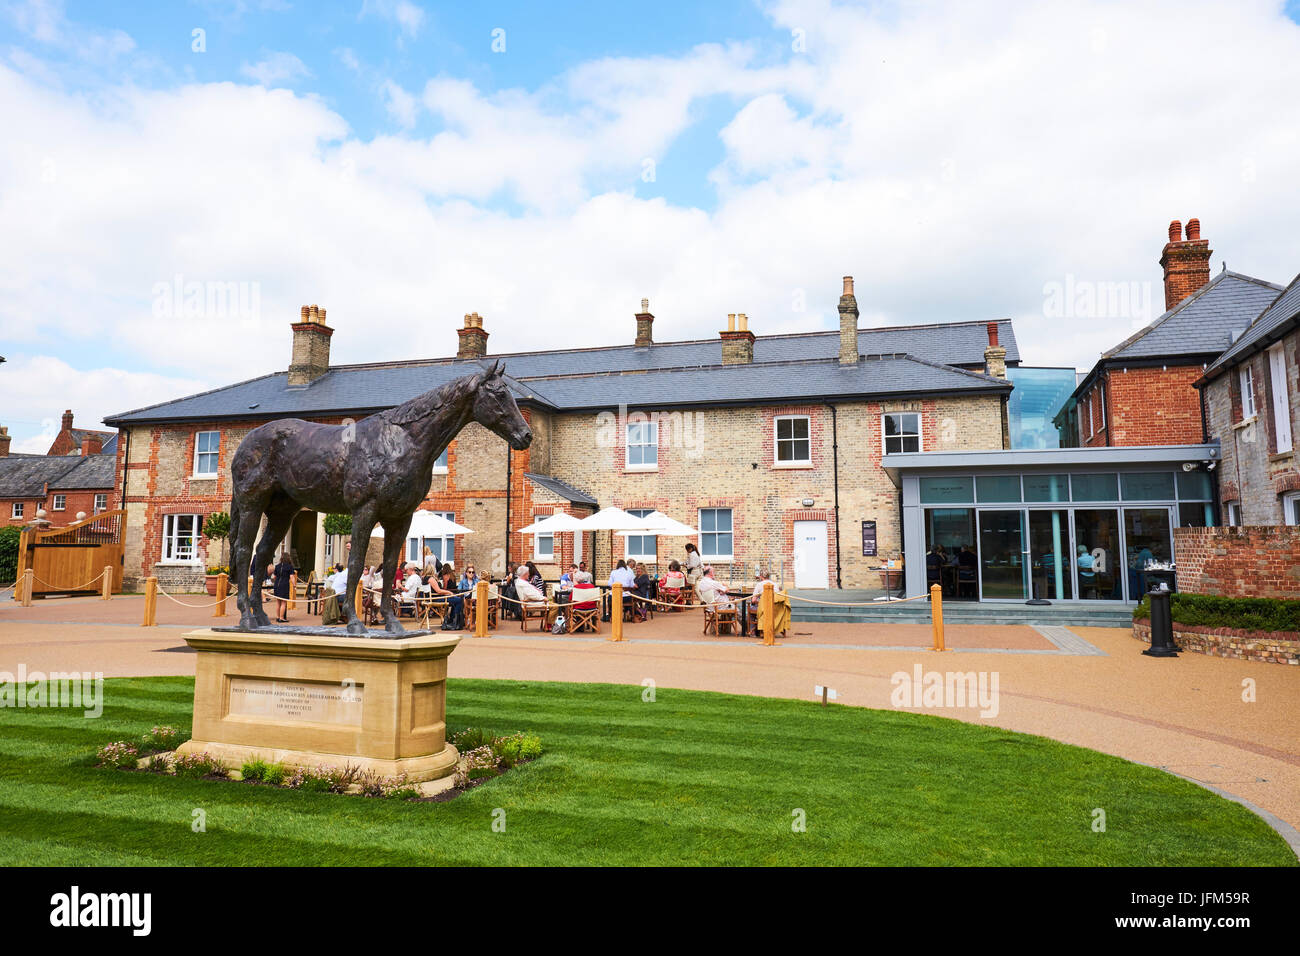 Palace House, National Heritage Centre für Pferderennen und sportliche Art, Palace Street, Newmarket, Suffolk, UK Stockfoto